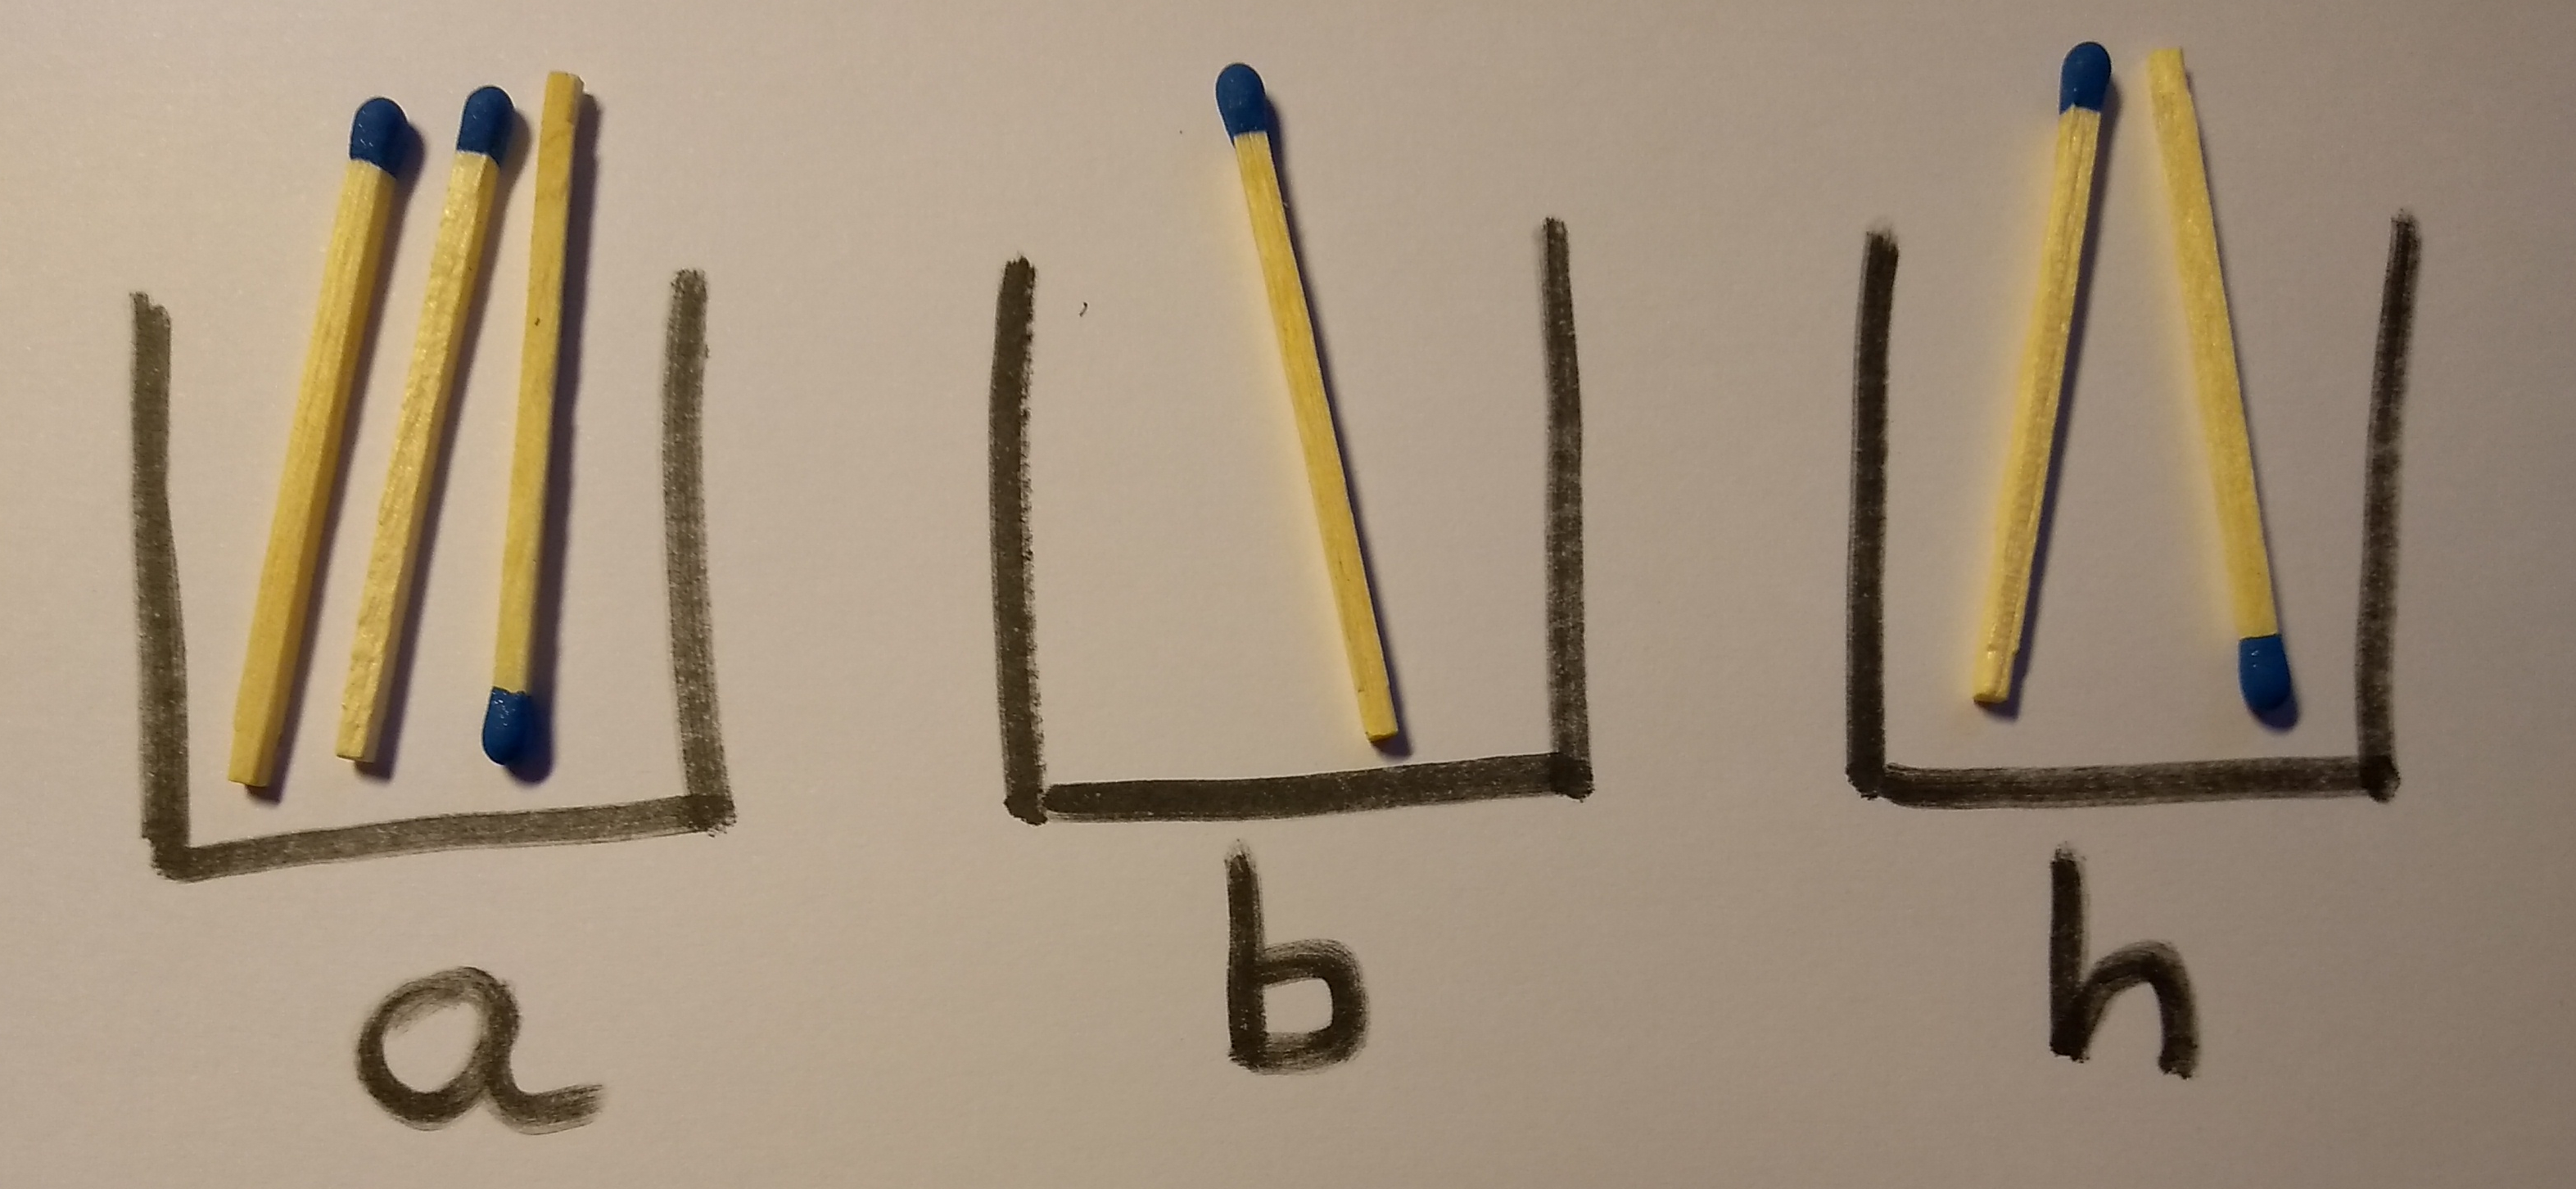 b=a